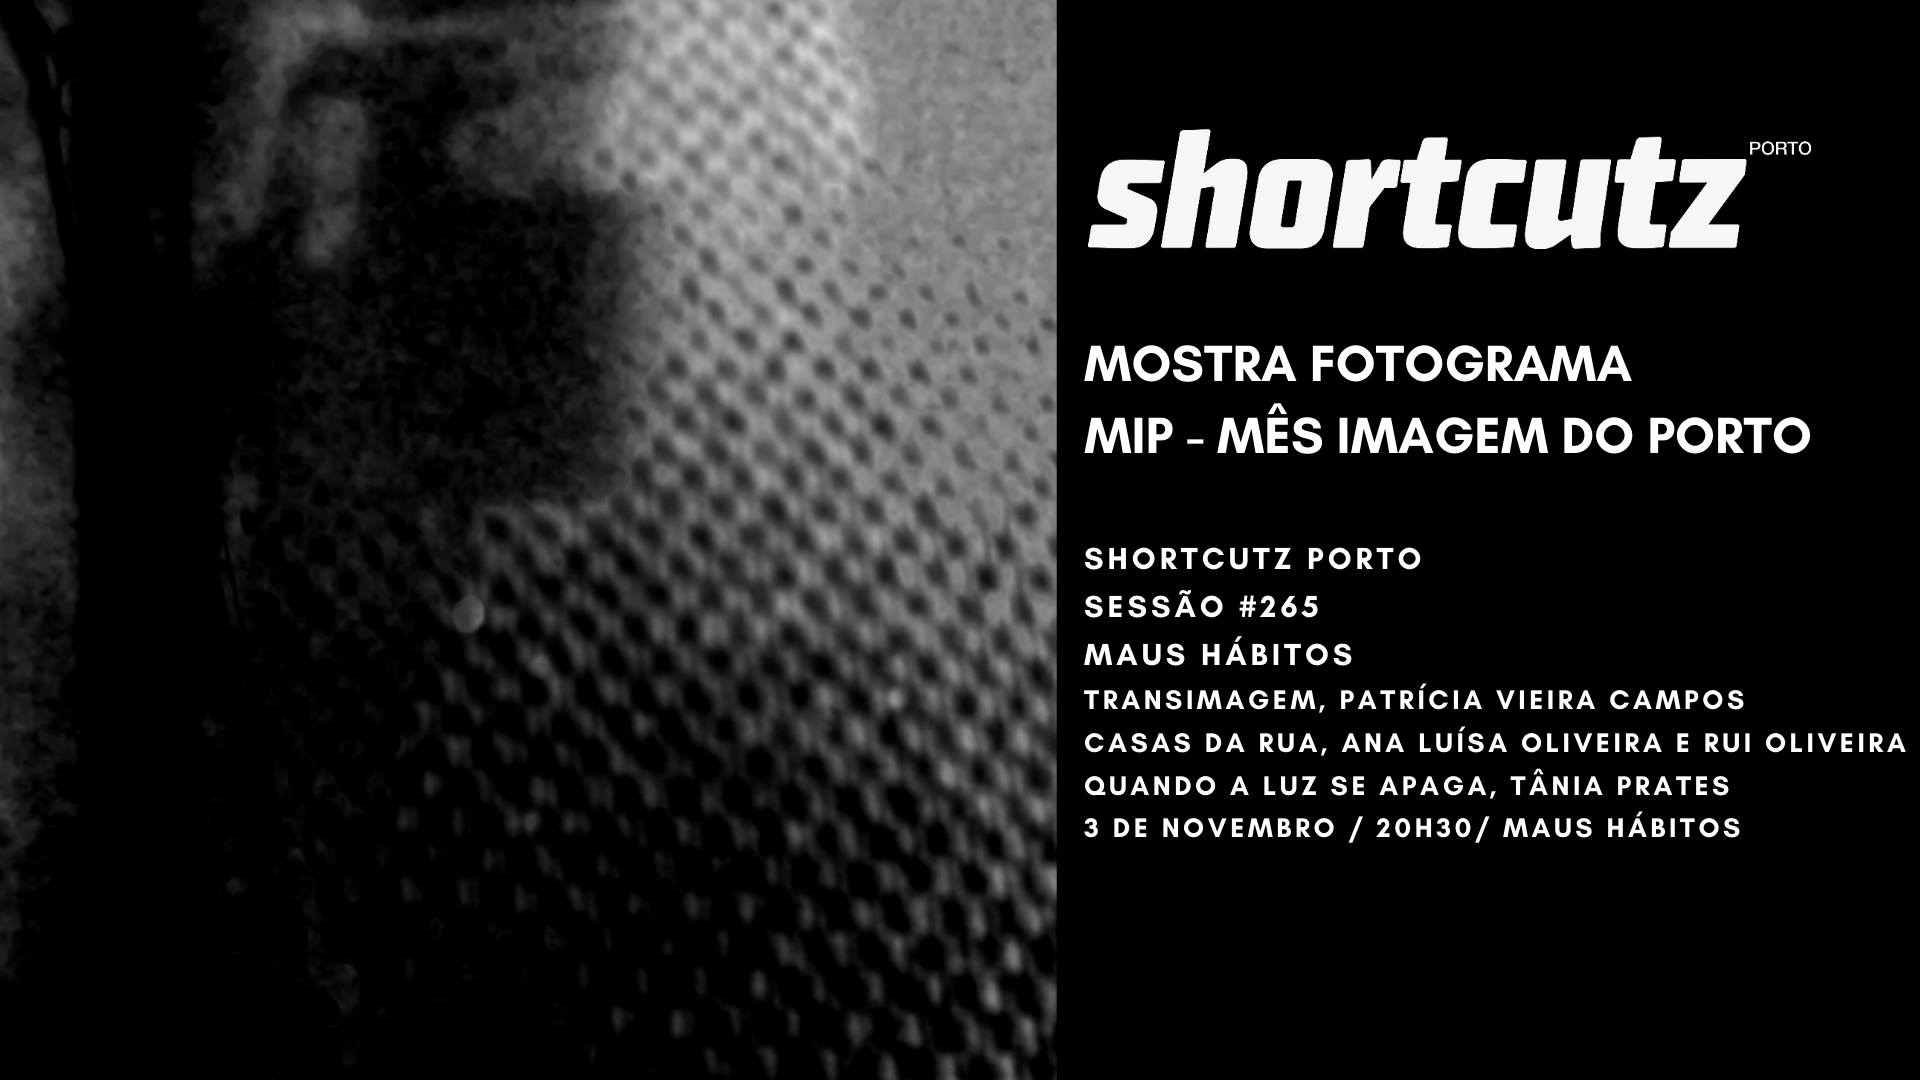 Shortcutz Porto #265 'Mostra Fotograma' MIP ( Mês da Imagem do Porto)